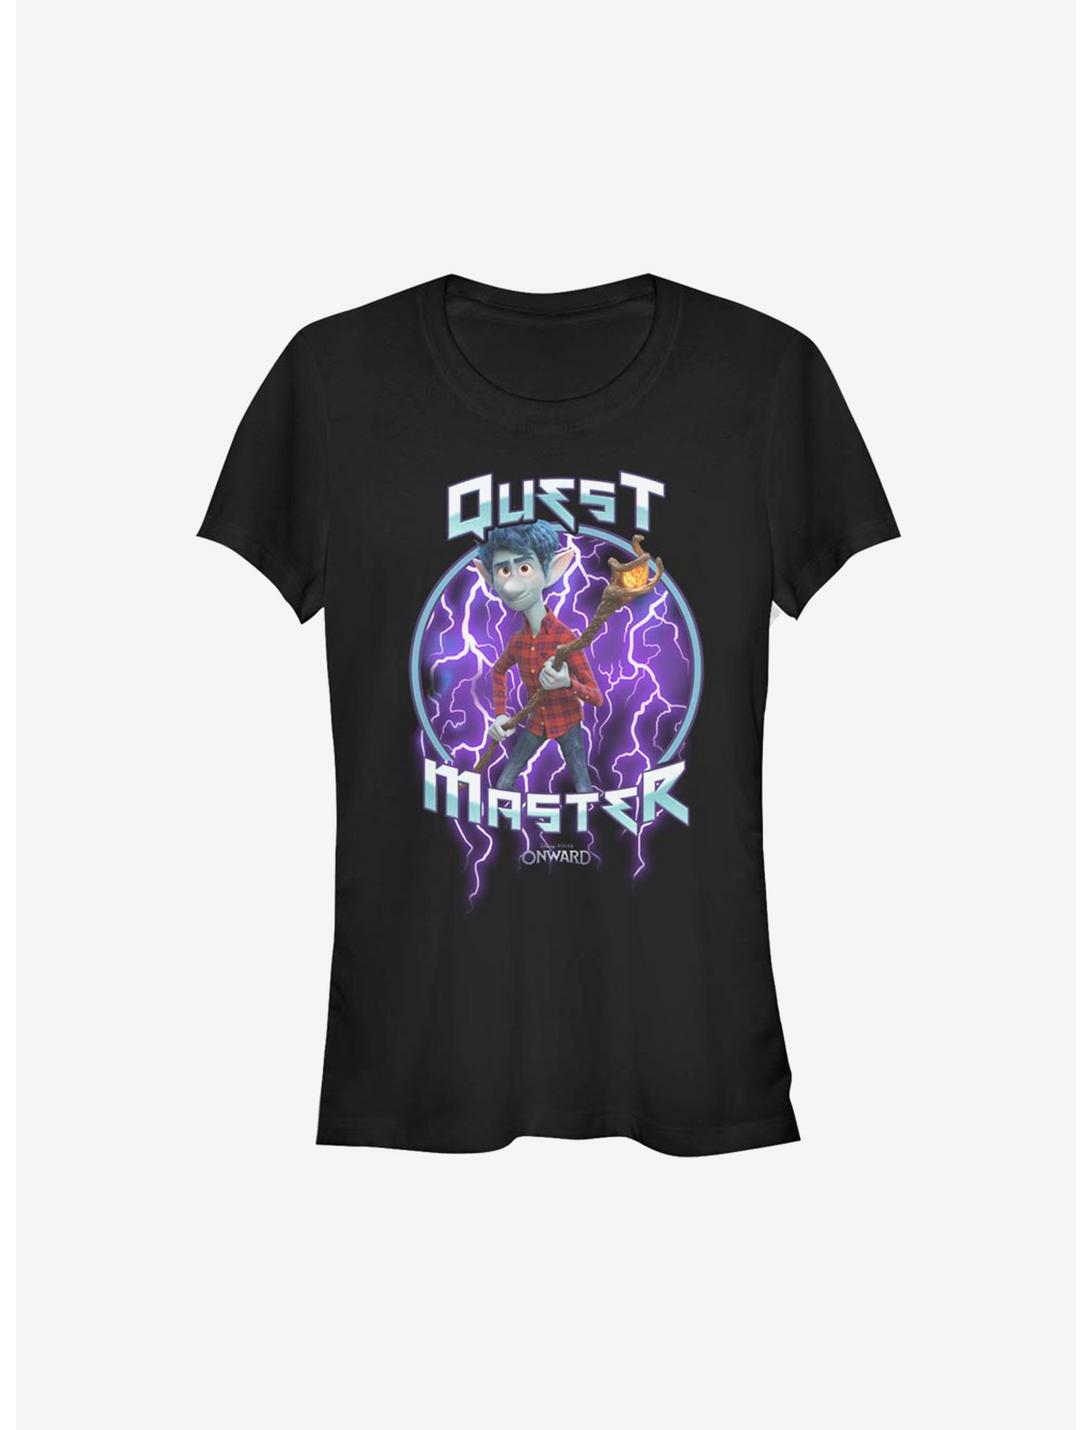 Disney Pixar Onward Quest Master Girls T-Shirt, BLACK, hi-res